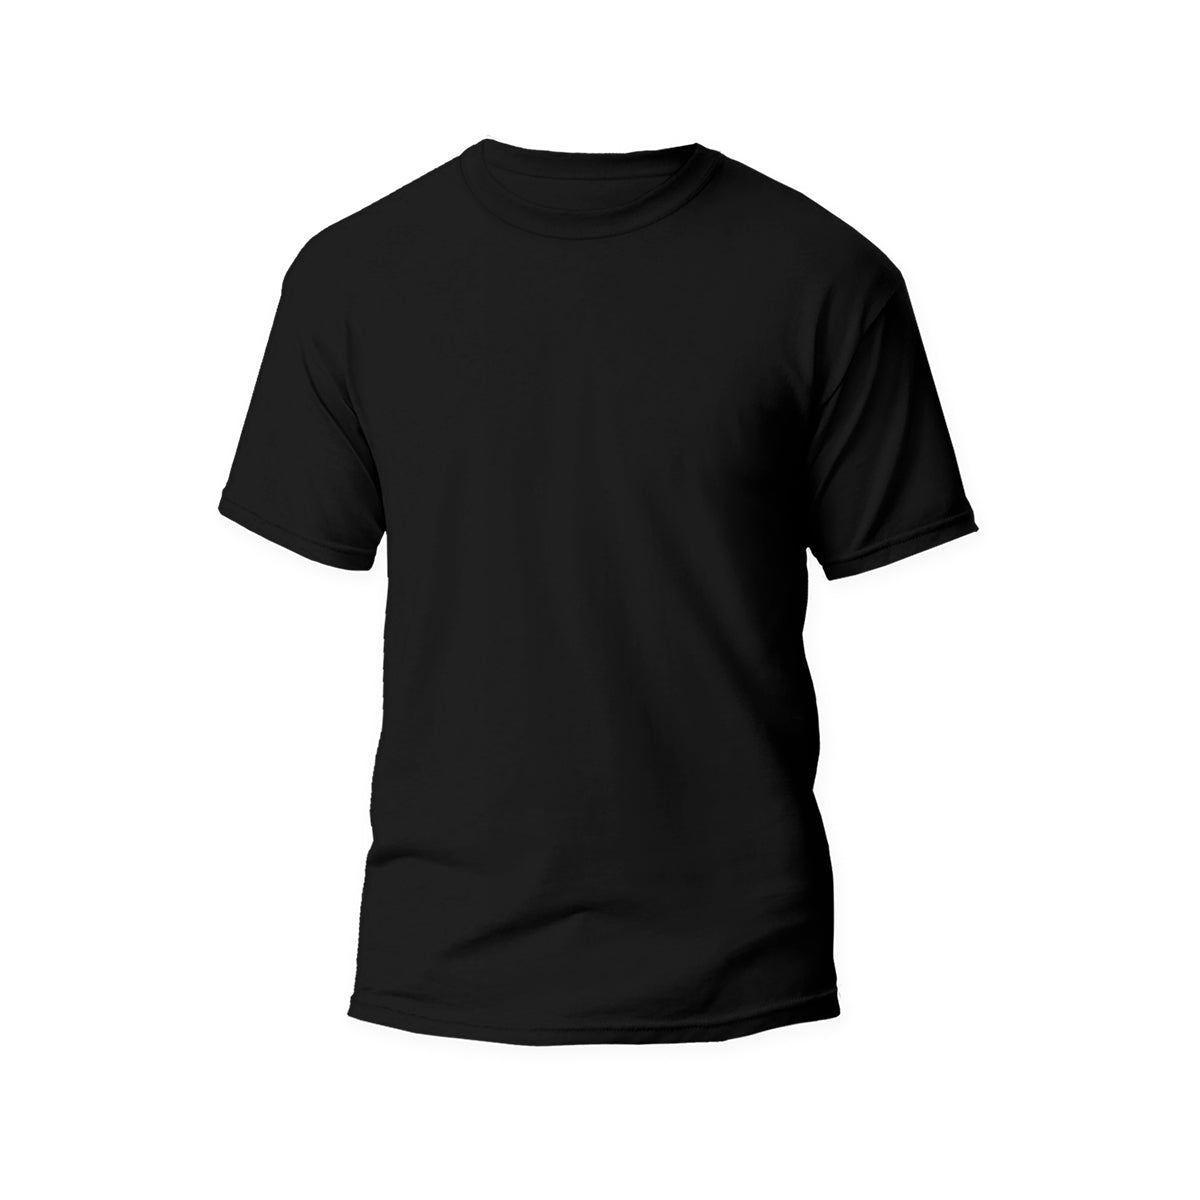 HercShirt 3.0 - The World's Cleanest Short Sleeve Shirt